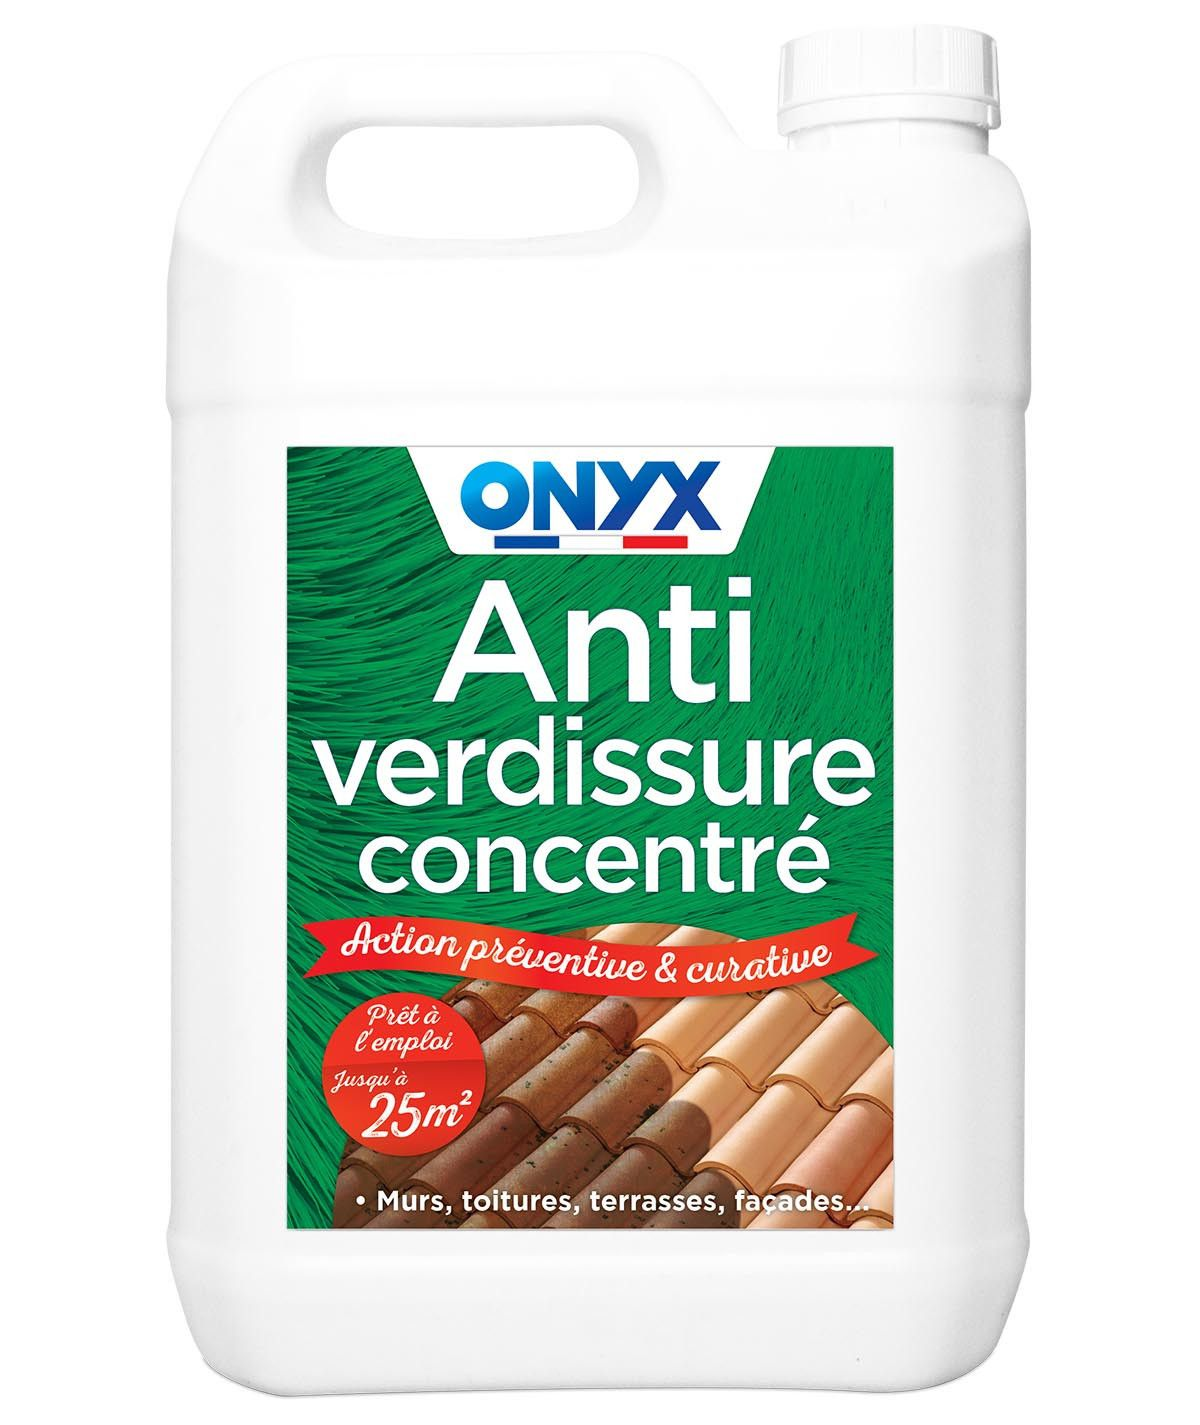 Anti-verdissure concentrate PRO 5%curative and preventive, 5 L 